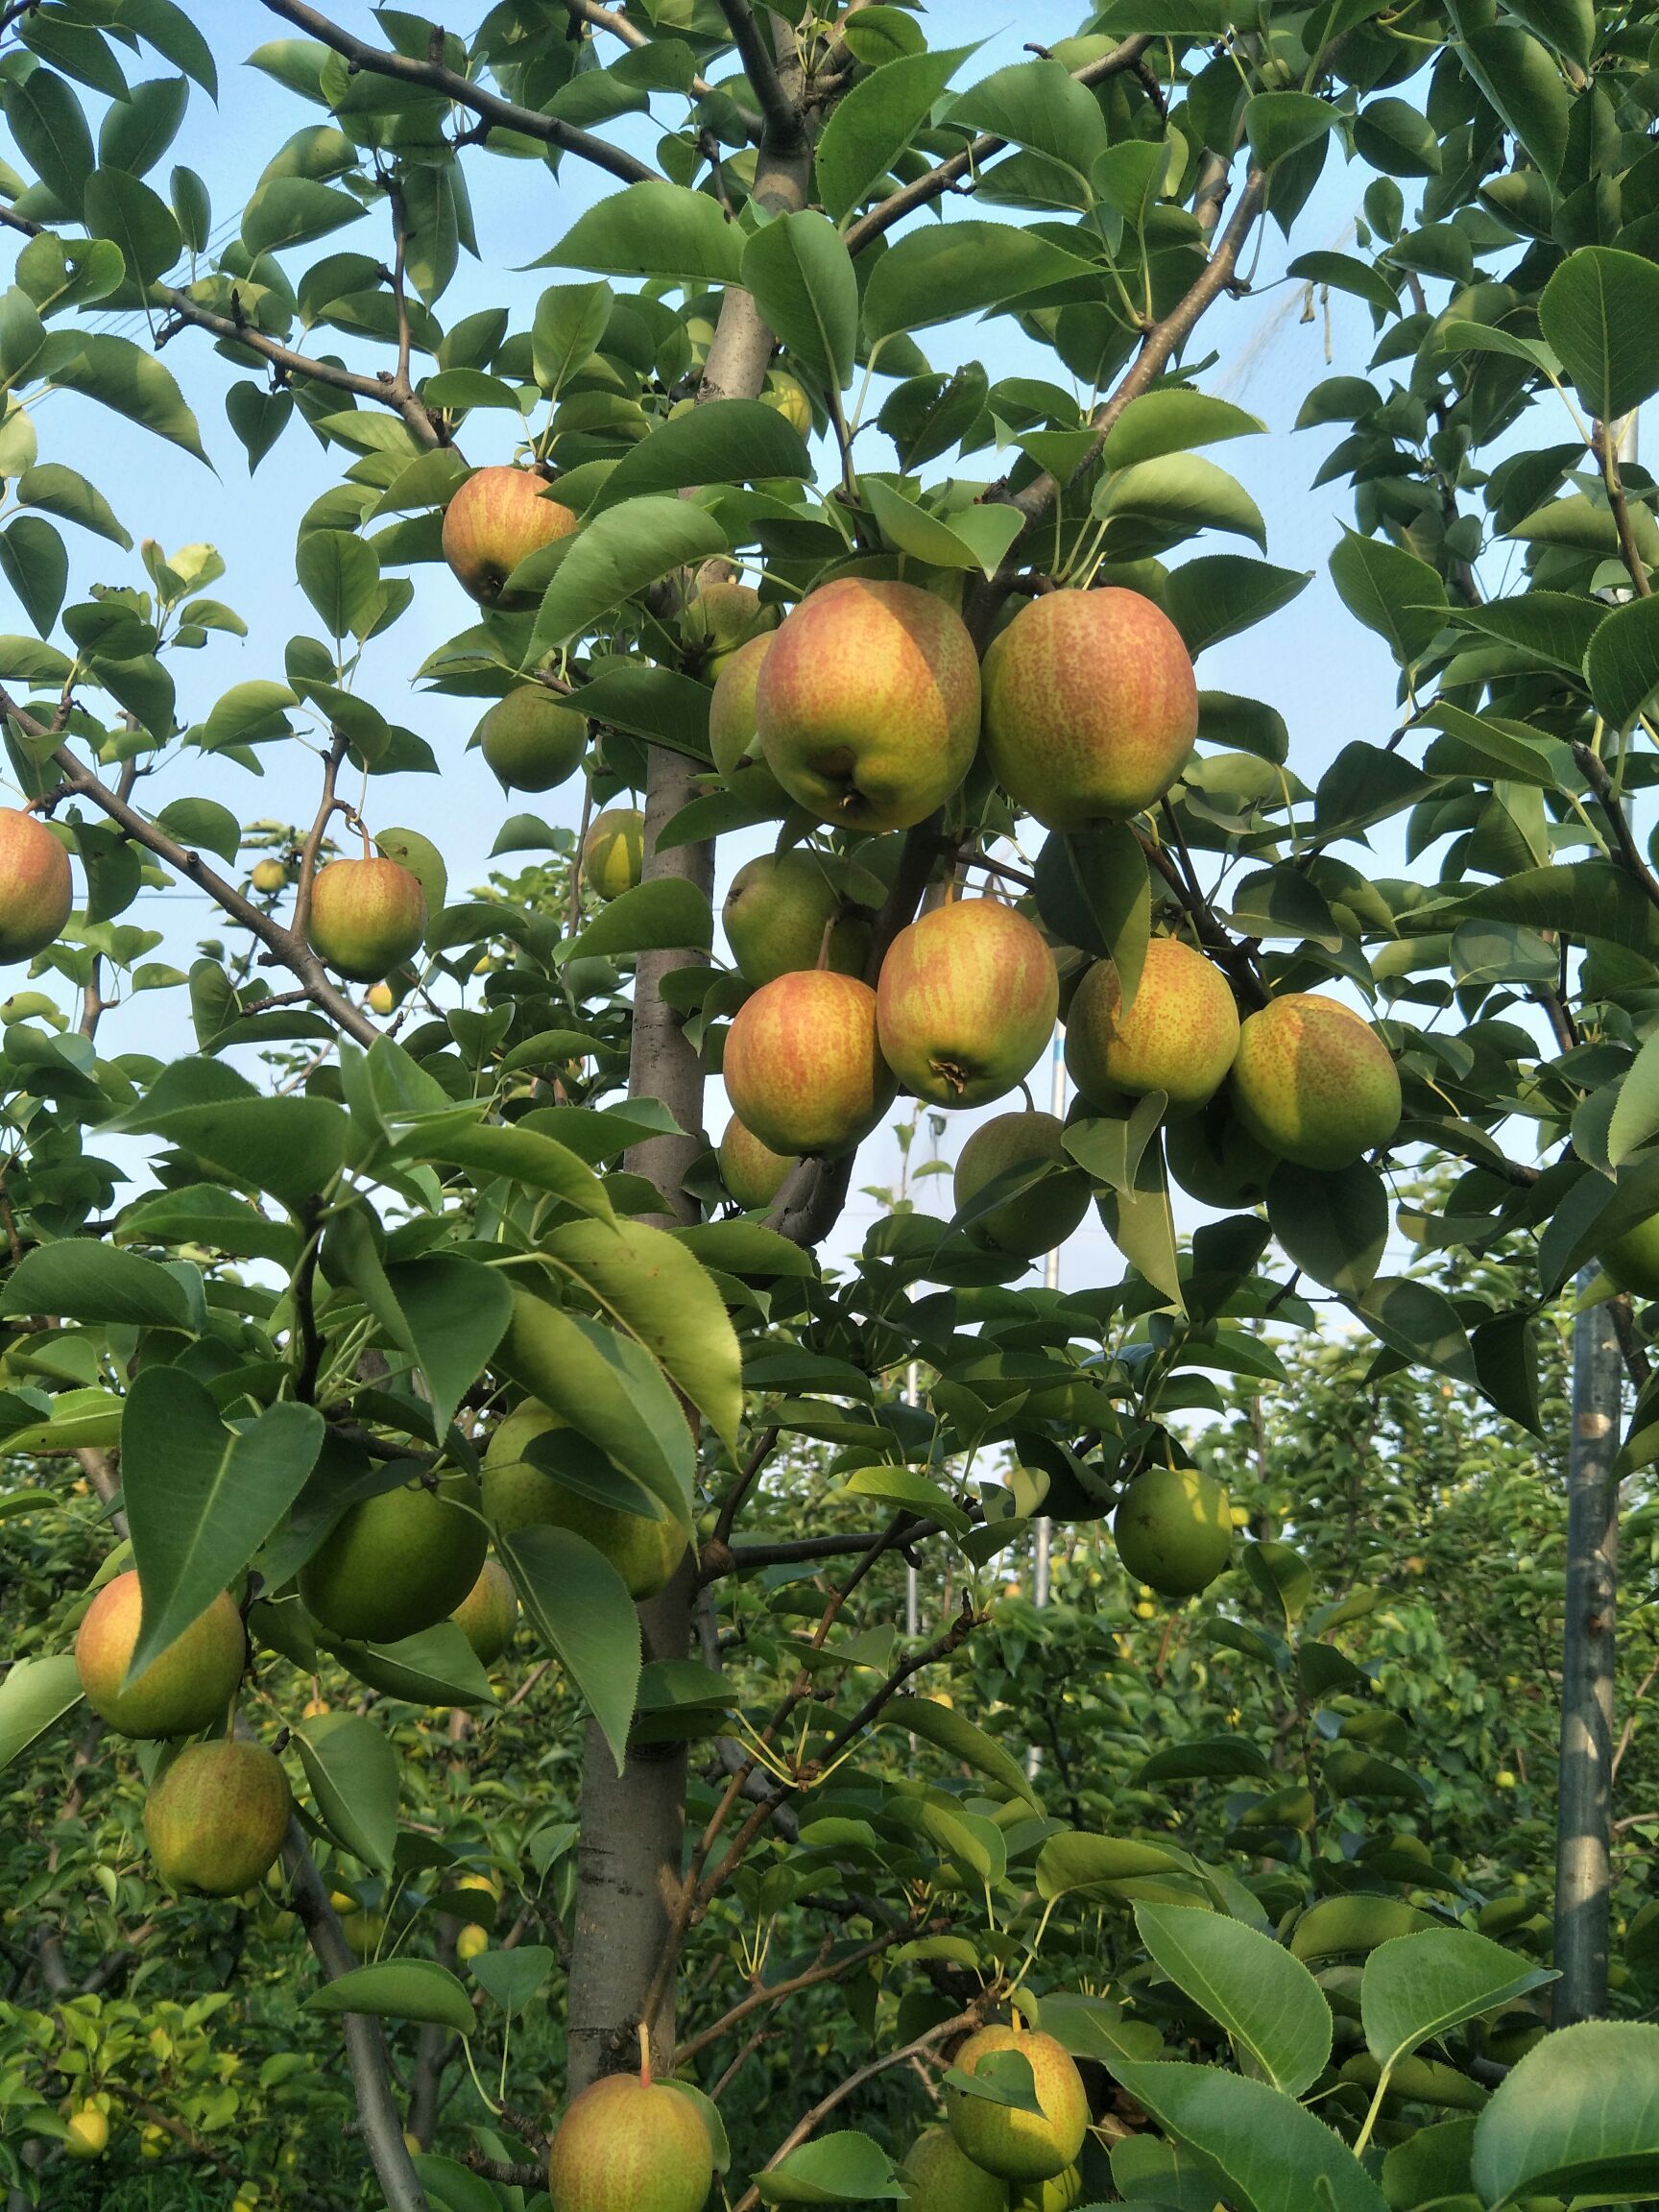 供应大厅  水果 梨 商品详情 我们沧州是金丝小枣,和梨的主产区,品种